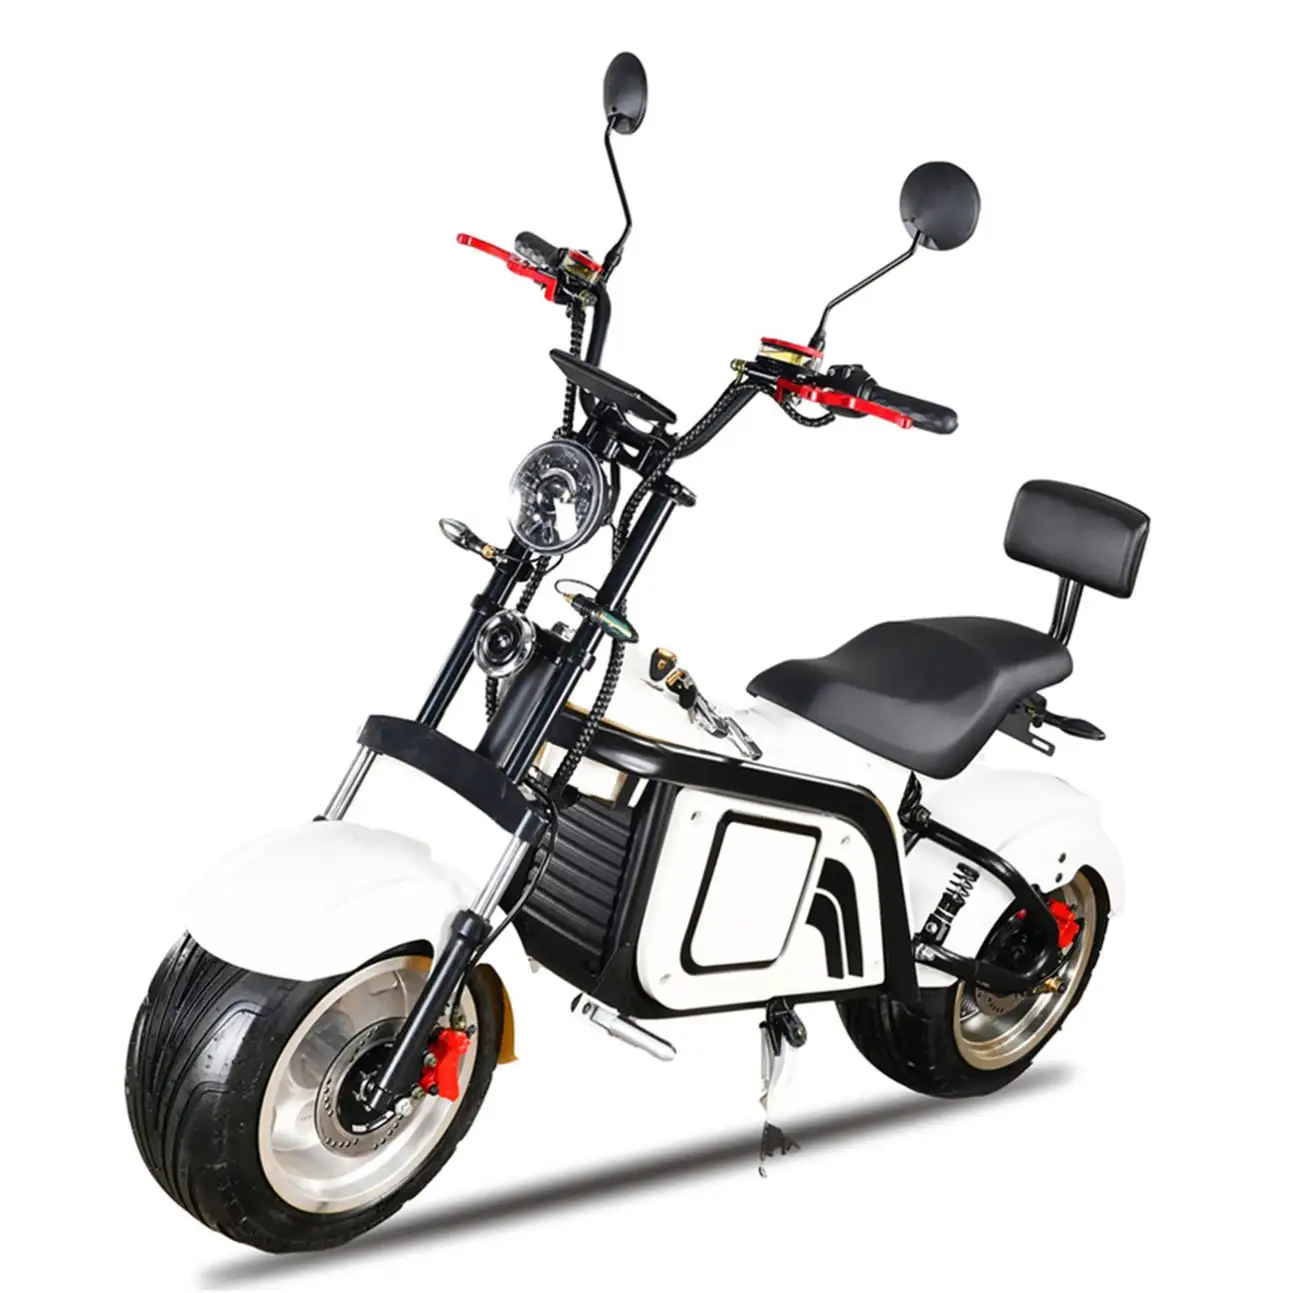 Motociclo elettrico giappone motociclo elettrico con Scooter cee E